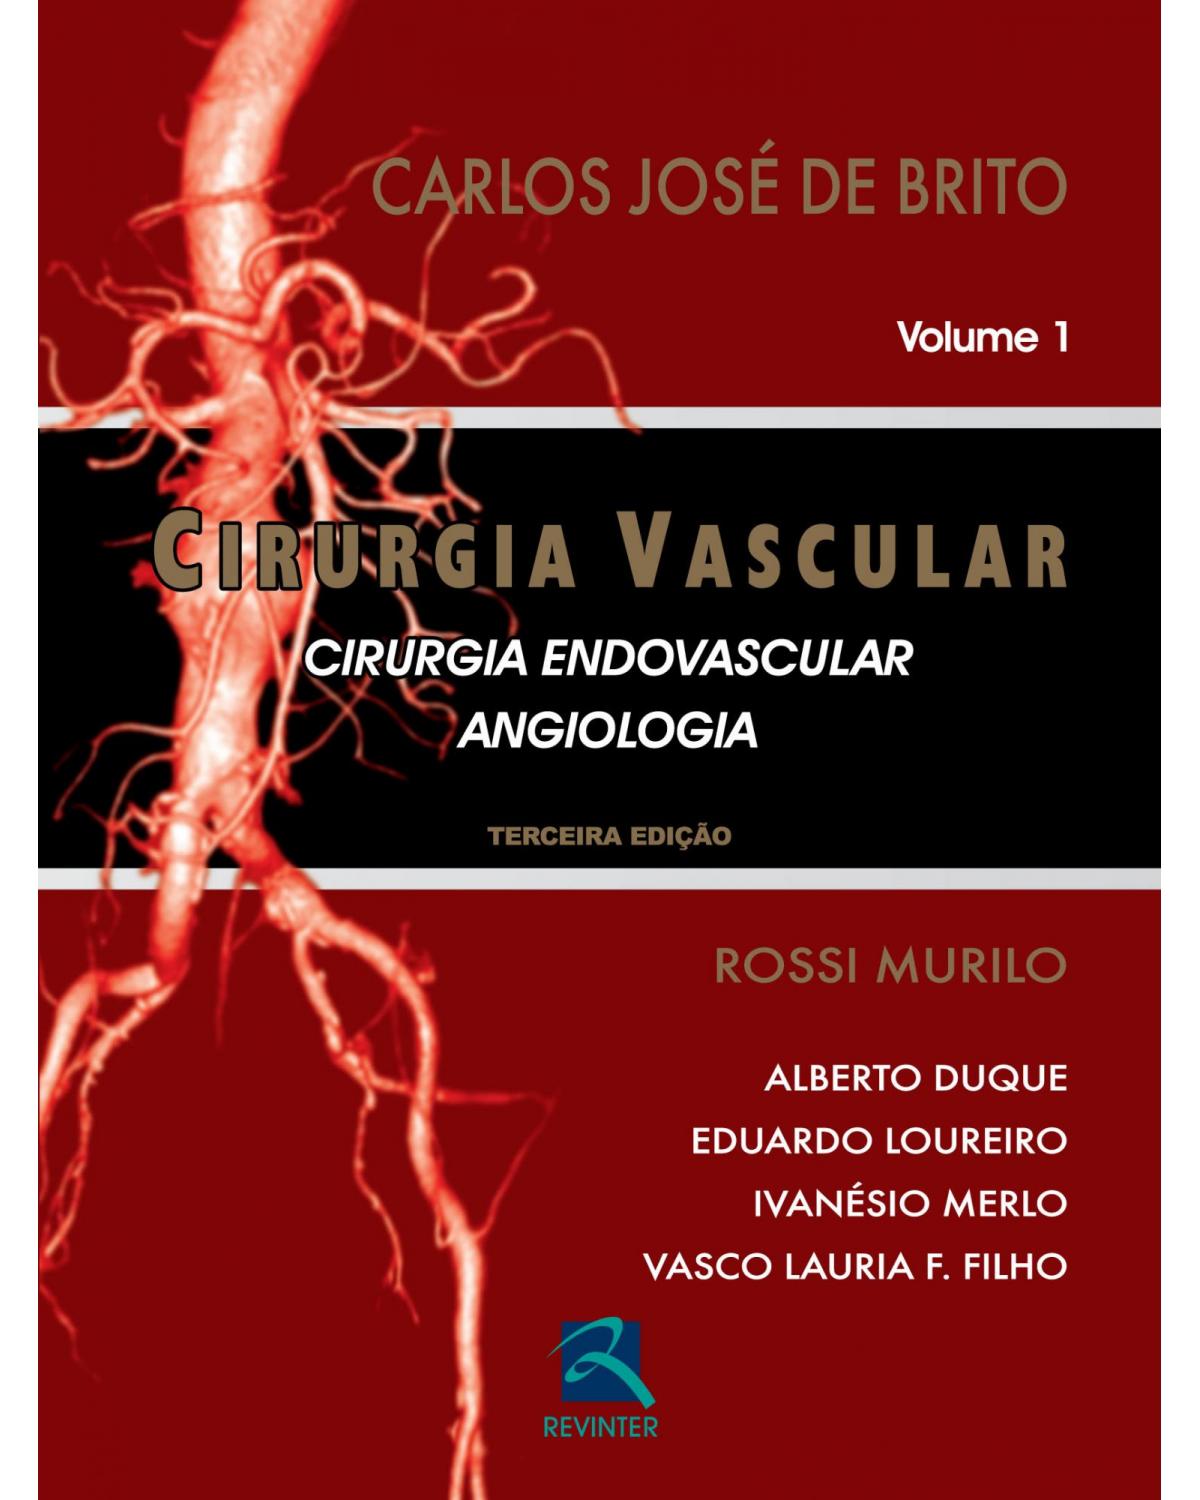 Cirurgia vascular - cirurgia endovascular - Angiologia - 3ª Edição | 2014